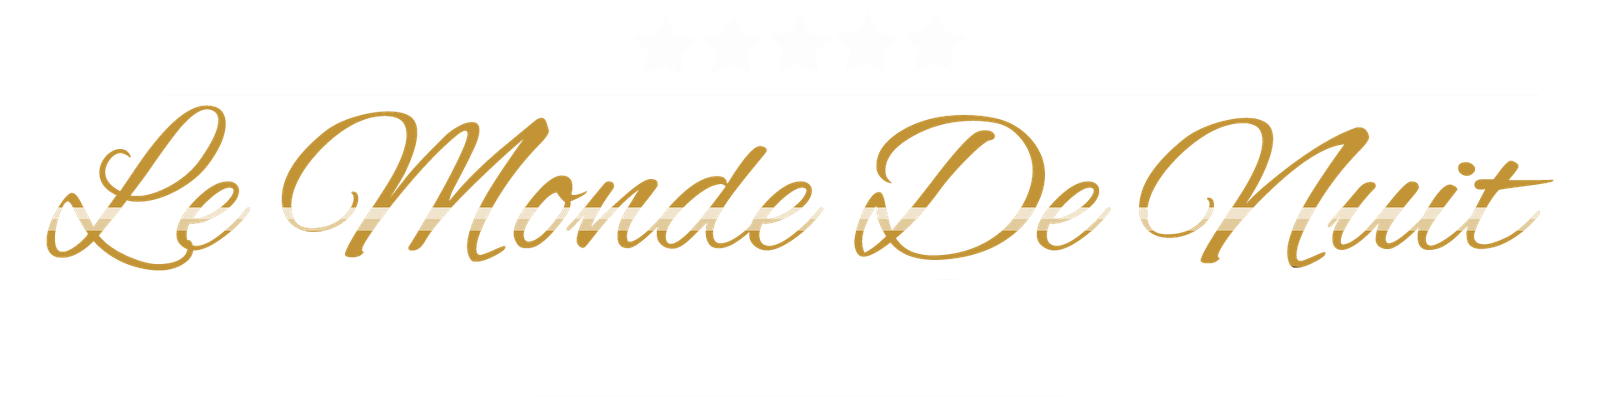 Le Monde de Nuit - Exclusive Club